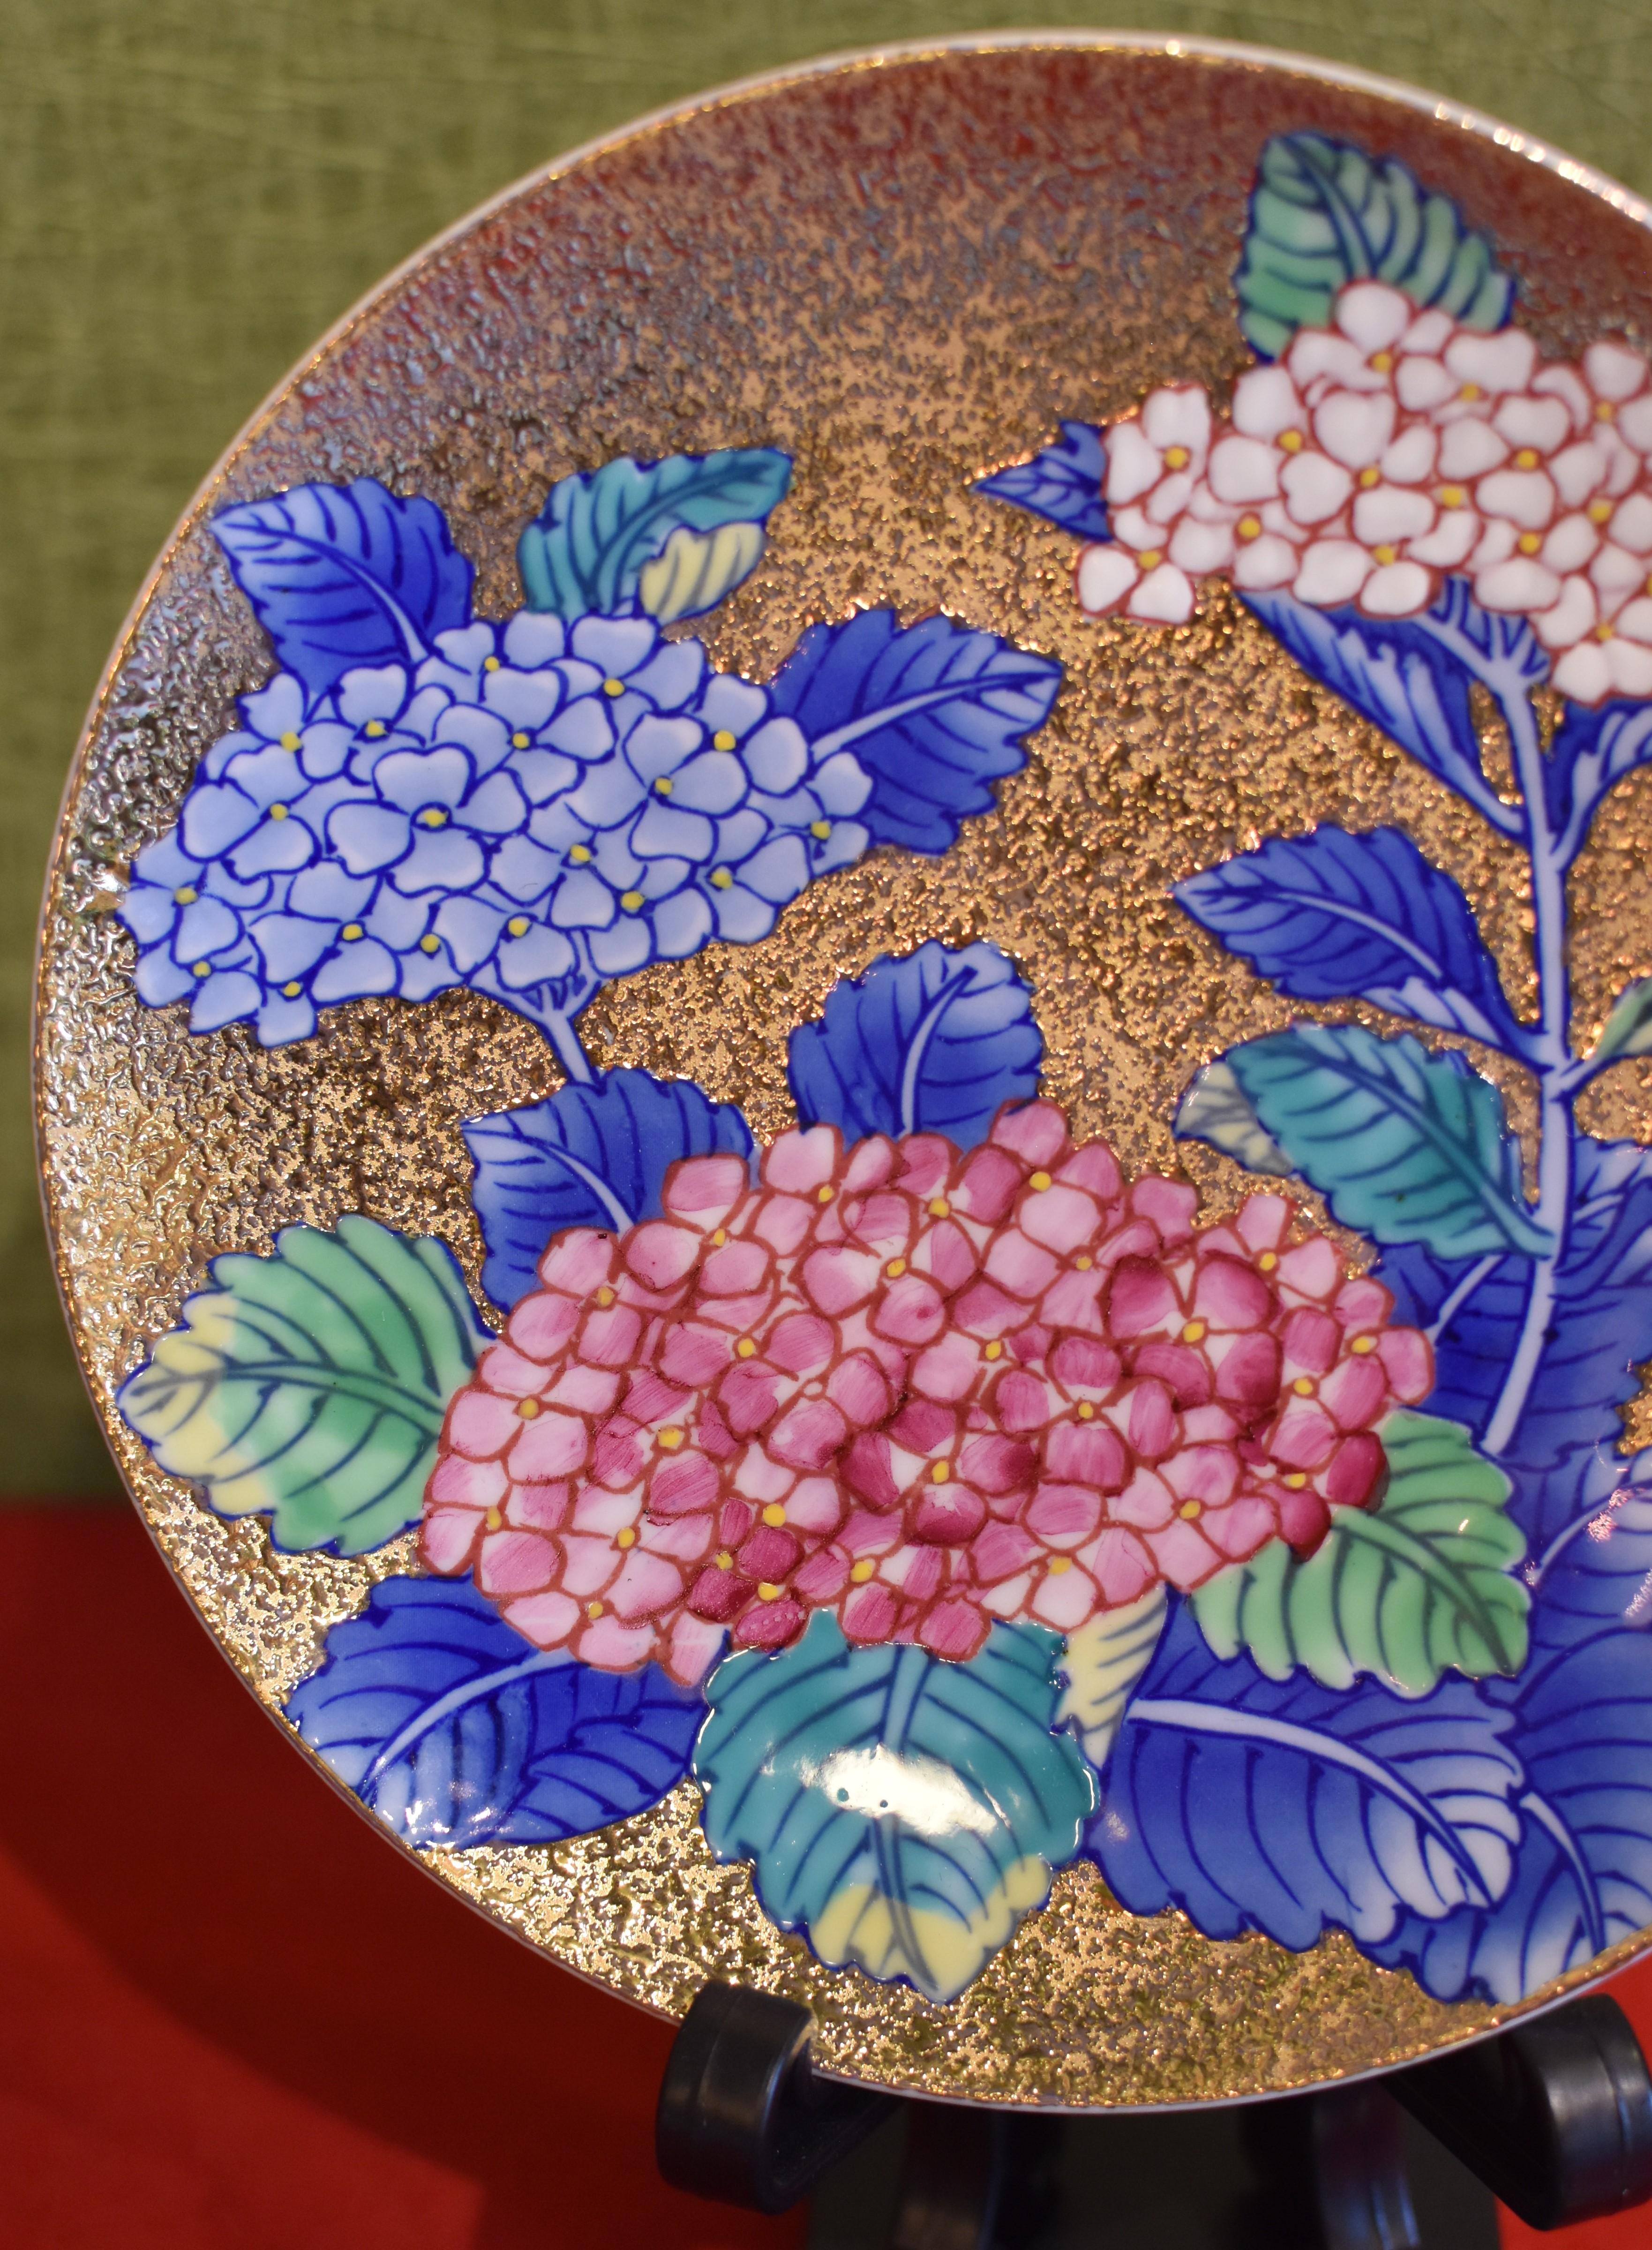 Exquisite zeitgenössische Tasse und Untertasse aus vergoldetem japanischem Porzellan, aufwändig handbemalt in lebhaftem Blau, Rot und Weiß auf einem attraktiven vergoldeten Korpus, mit herrlichen Hortensien in voller Blüte. Diese Tasse mit